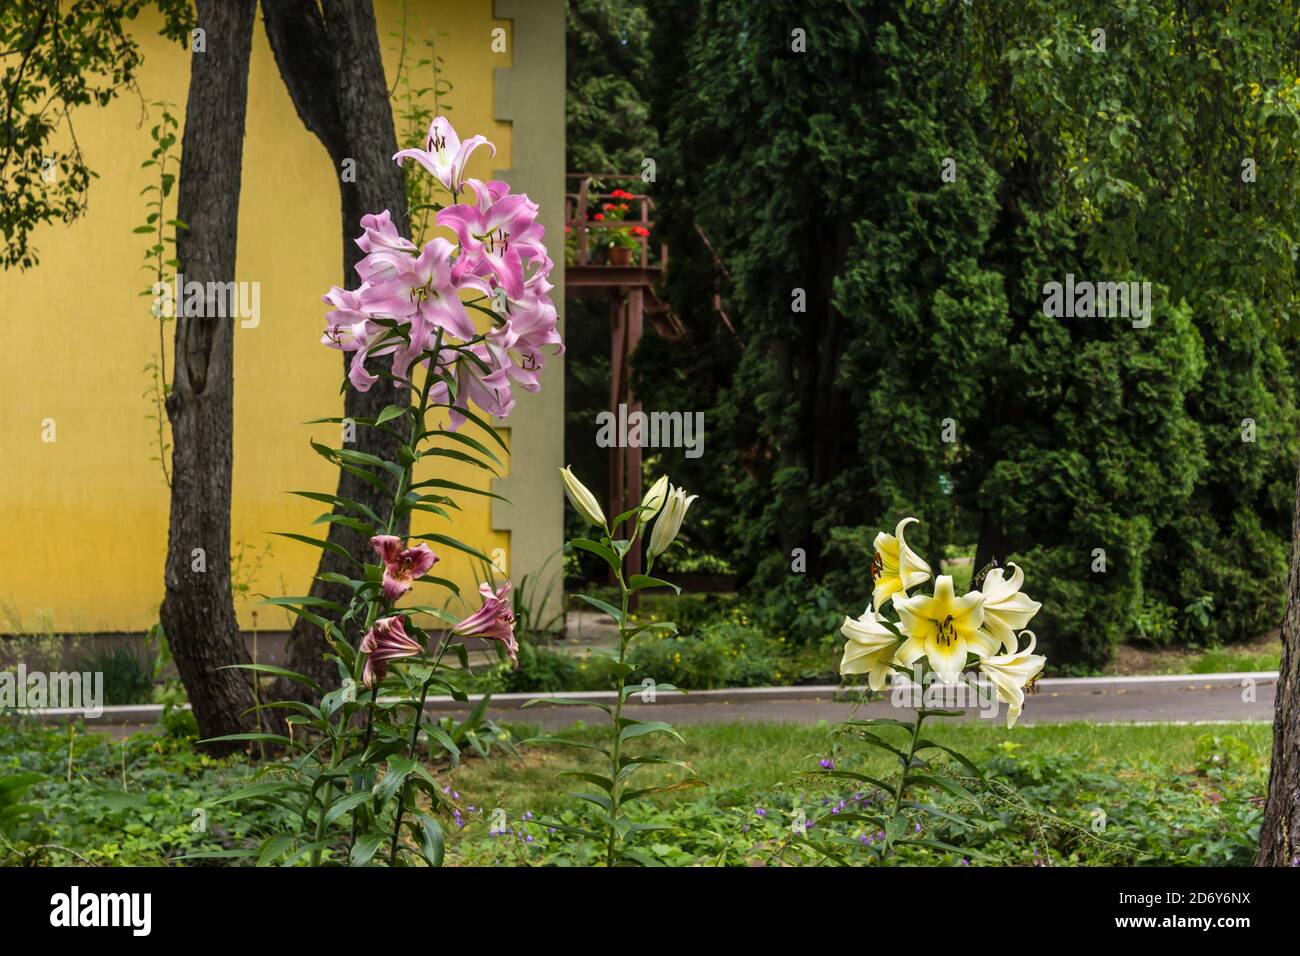 Inflorescence des lys pourpres et blancs ( Liliaceae) sur le fond des arbres et d'un mur jaune. Jardin botanique au milieu de l'été. Banque D'Images